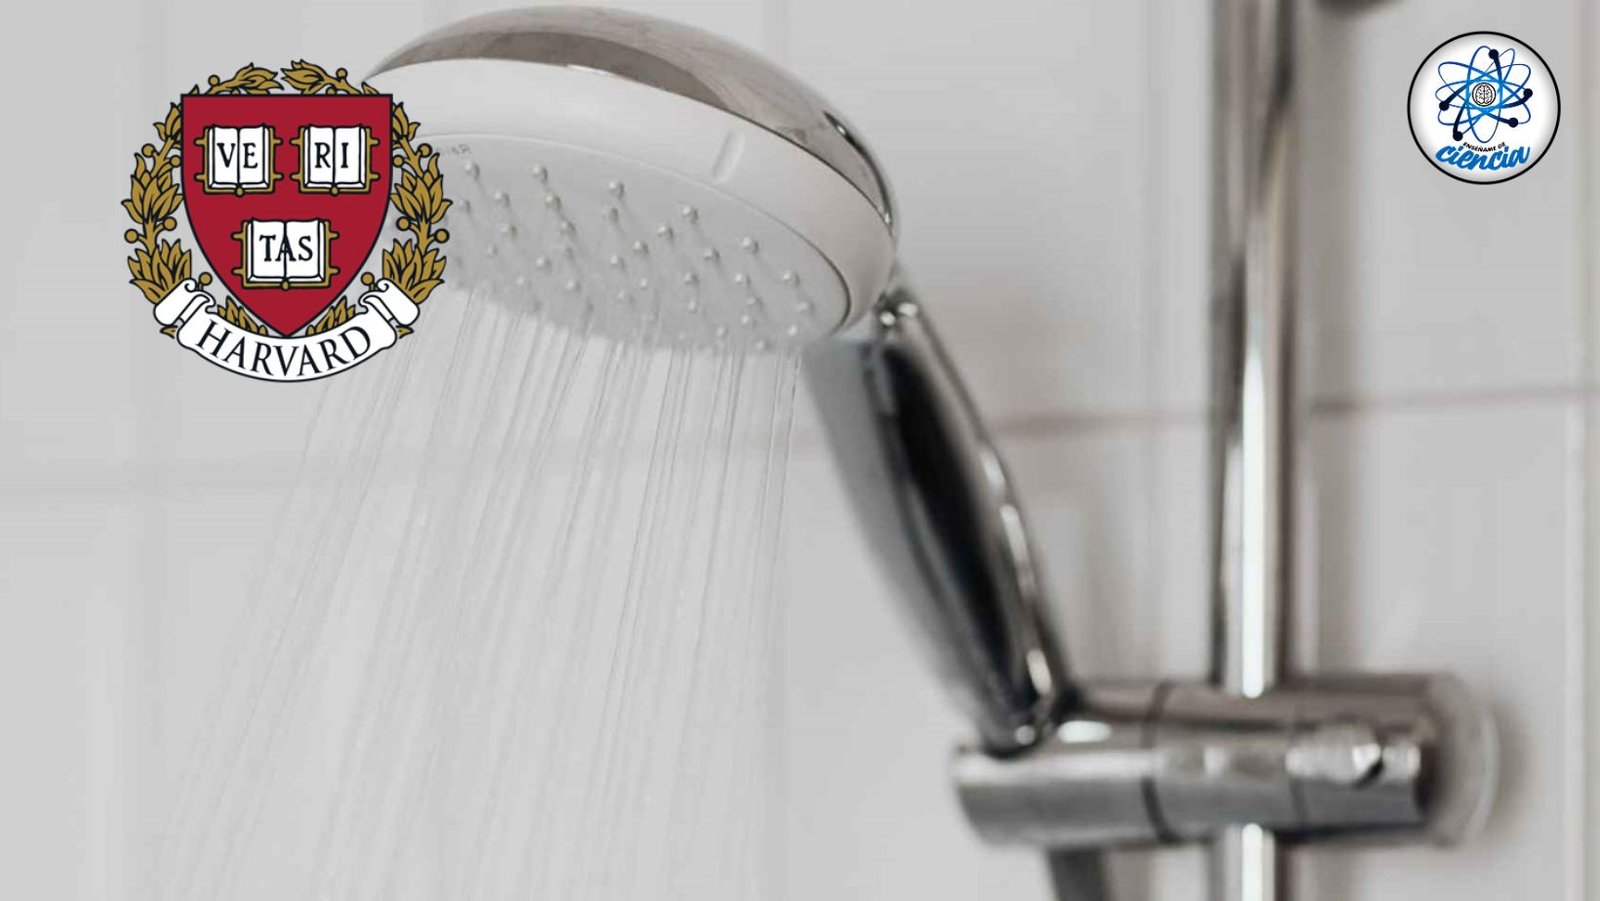 Descubra la frecuencia óptima de duchas para una piel saludable, según Harvard